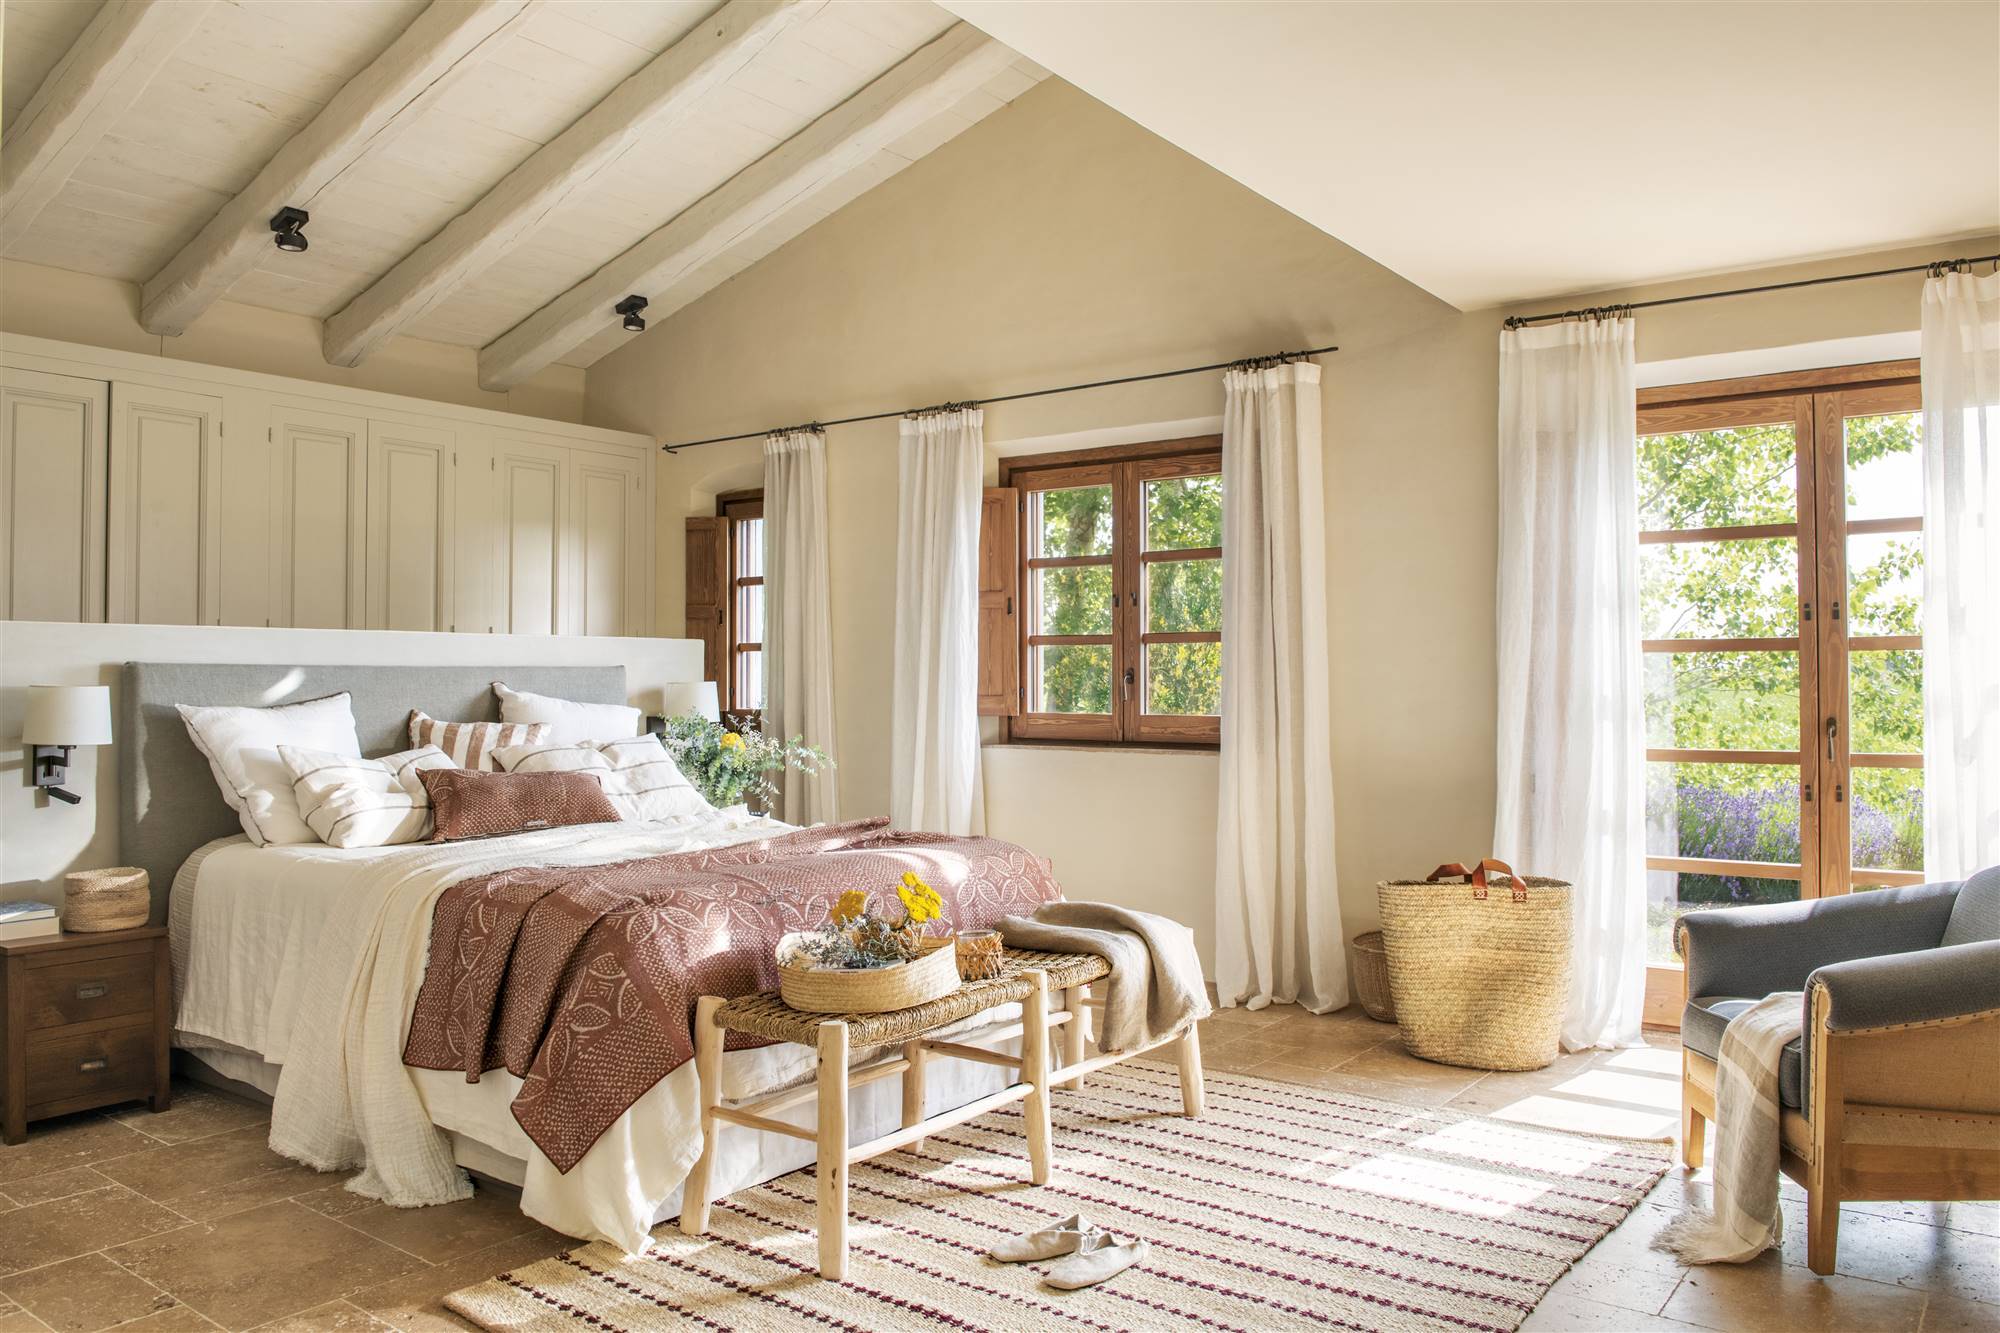 Dormitorio de verano de estilo campestre con vestidor tras el cabecero y ropa de cama blanca y terracota. 